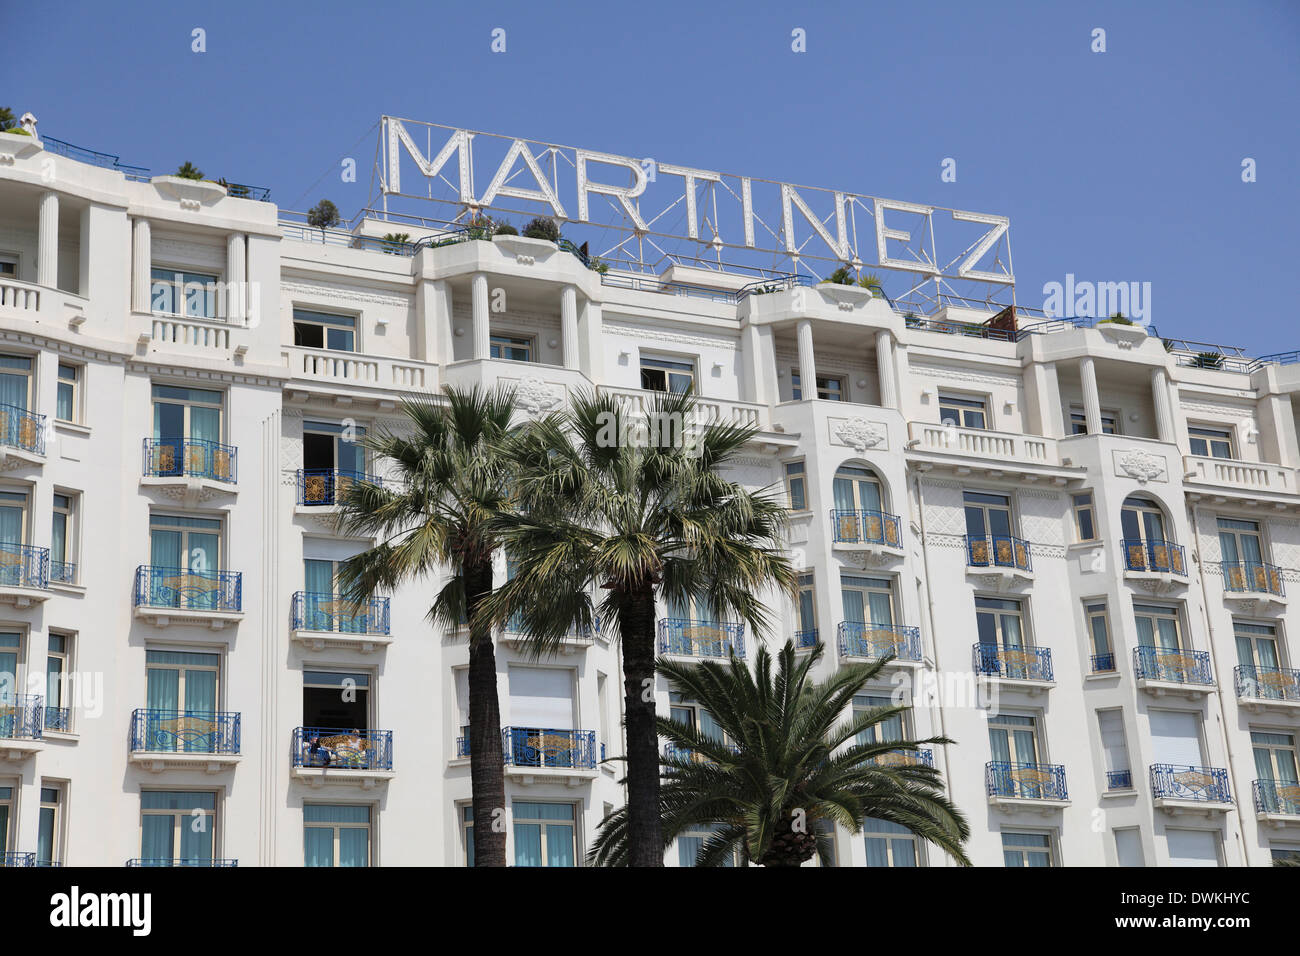 Hôtel Martinez, La Croisette, Cannes, Cote d'Azur, Provence, Côte d'Azur, France, Europe Banque D'Images